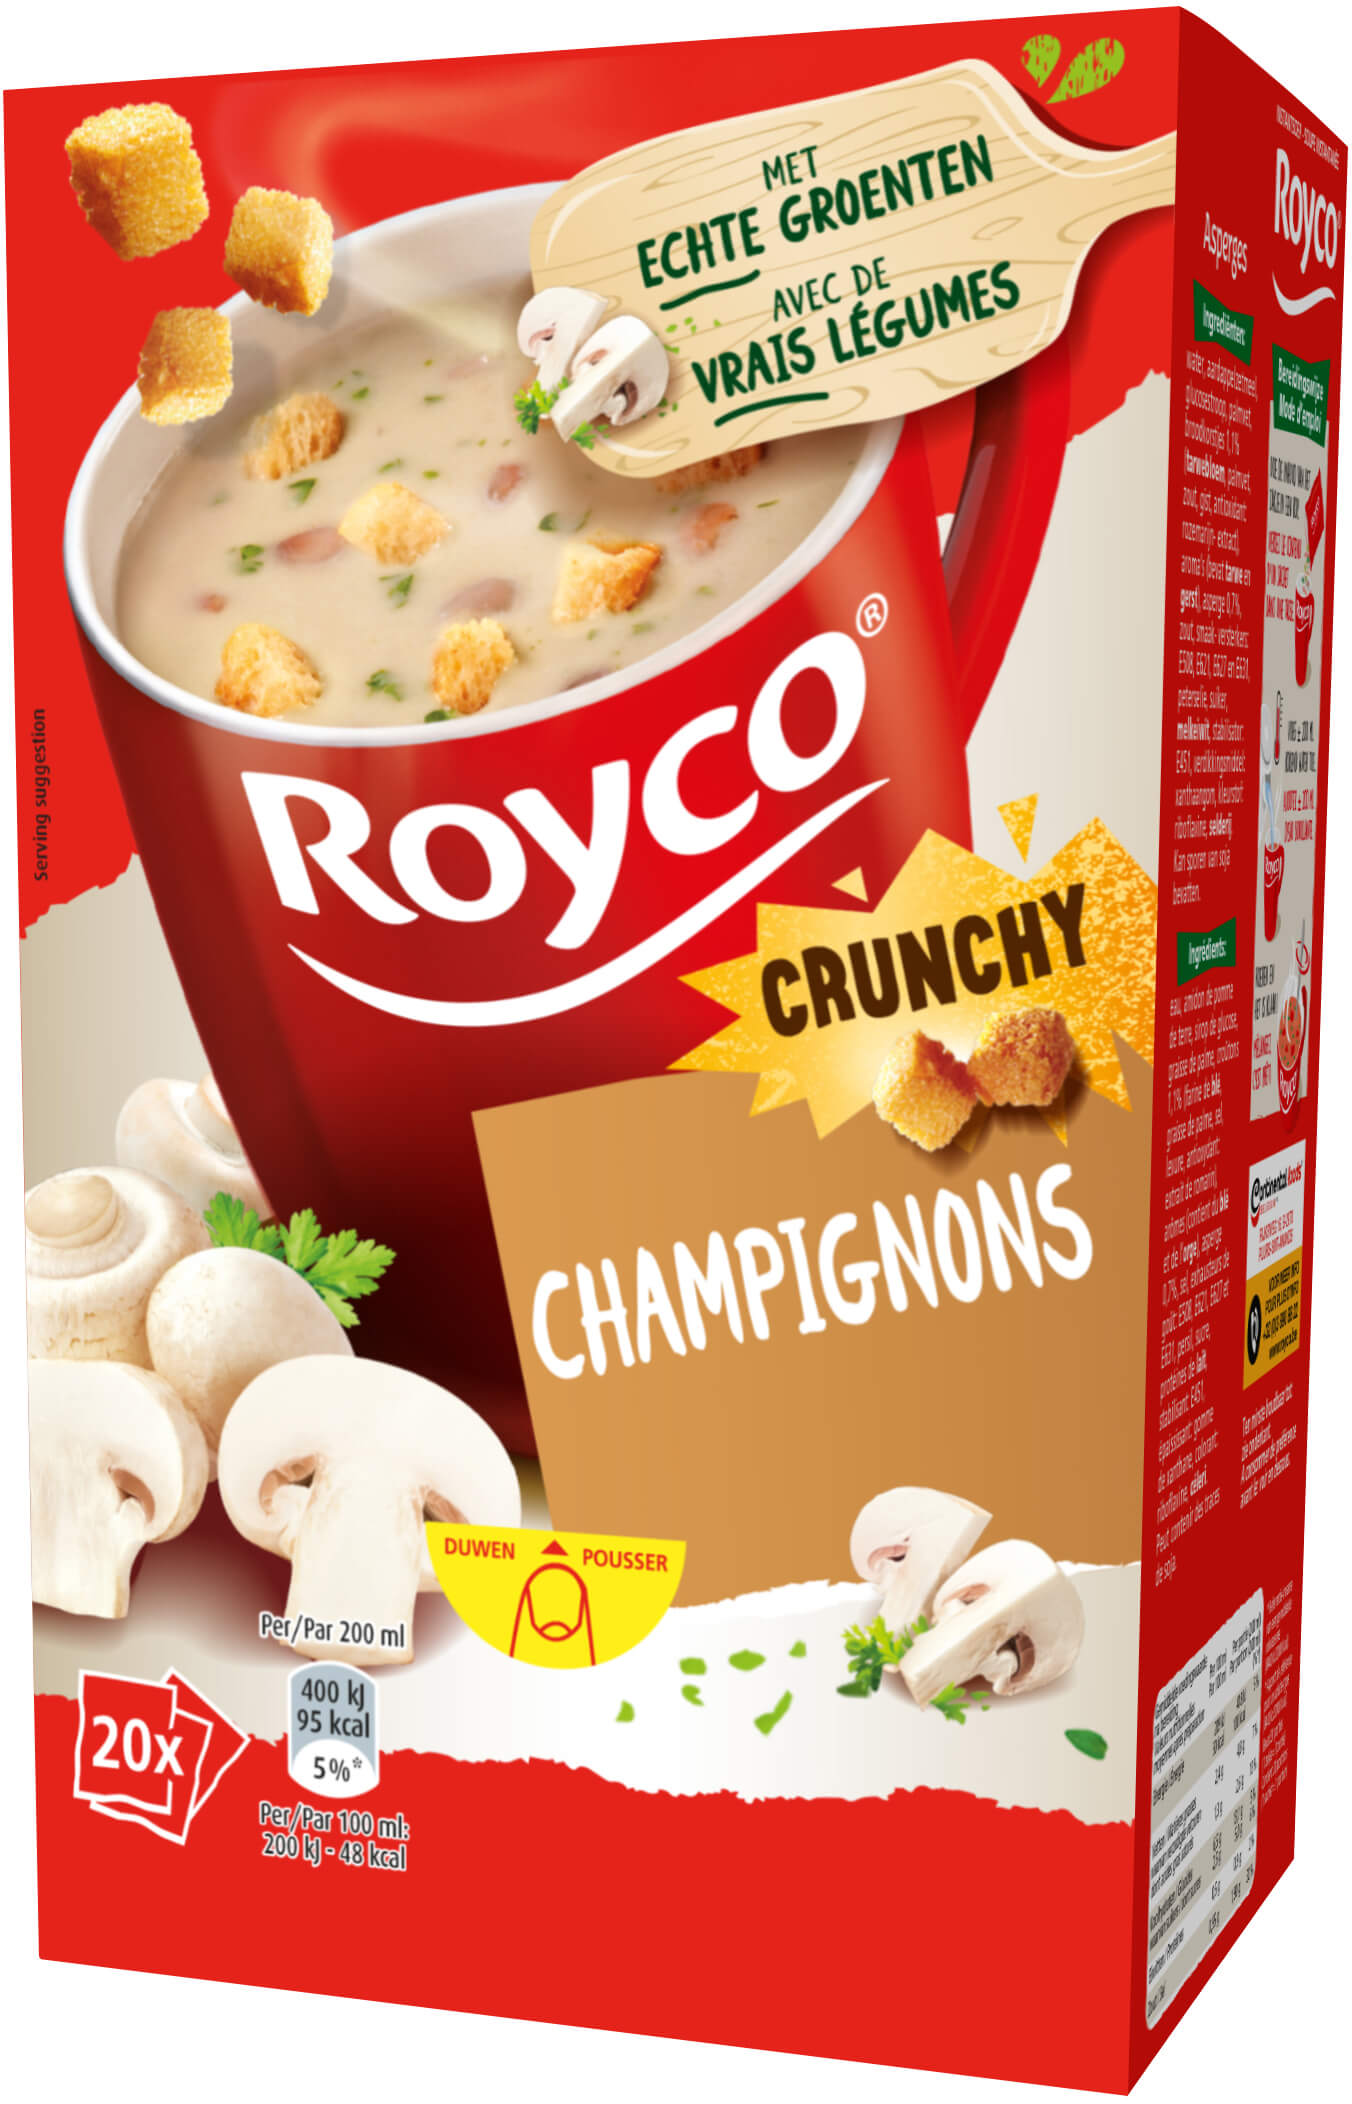 Royco Champignons Crunchy